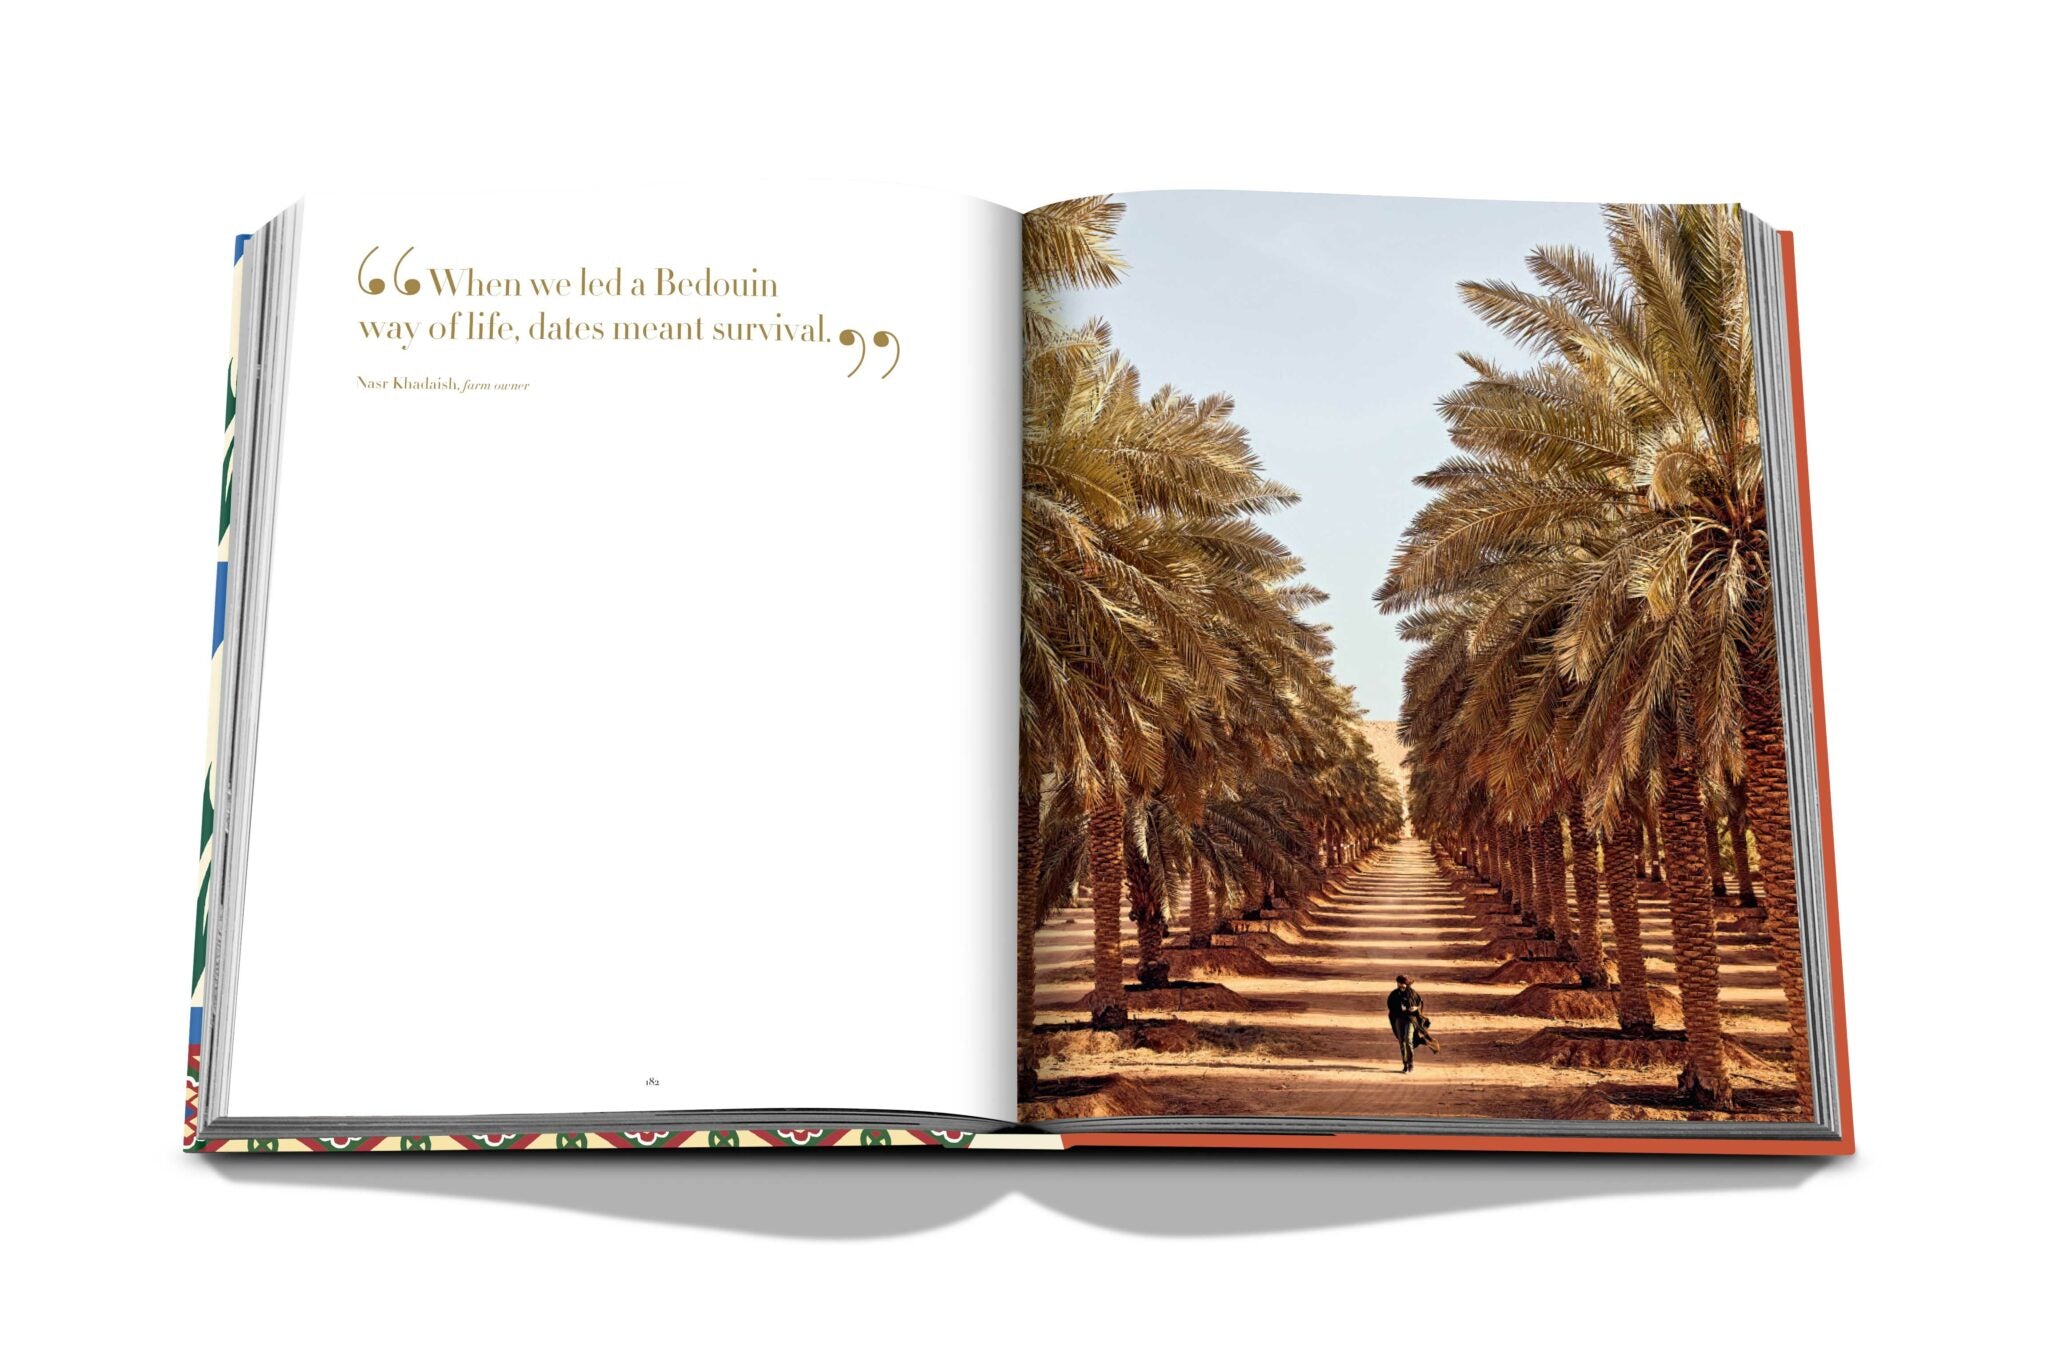 Assouline Saudi Dates: Et portræt af den hellige frugt